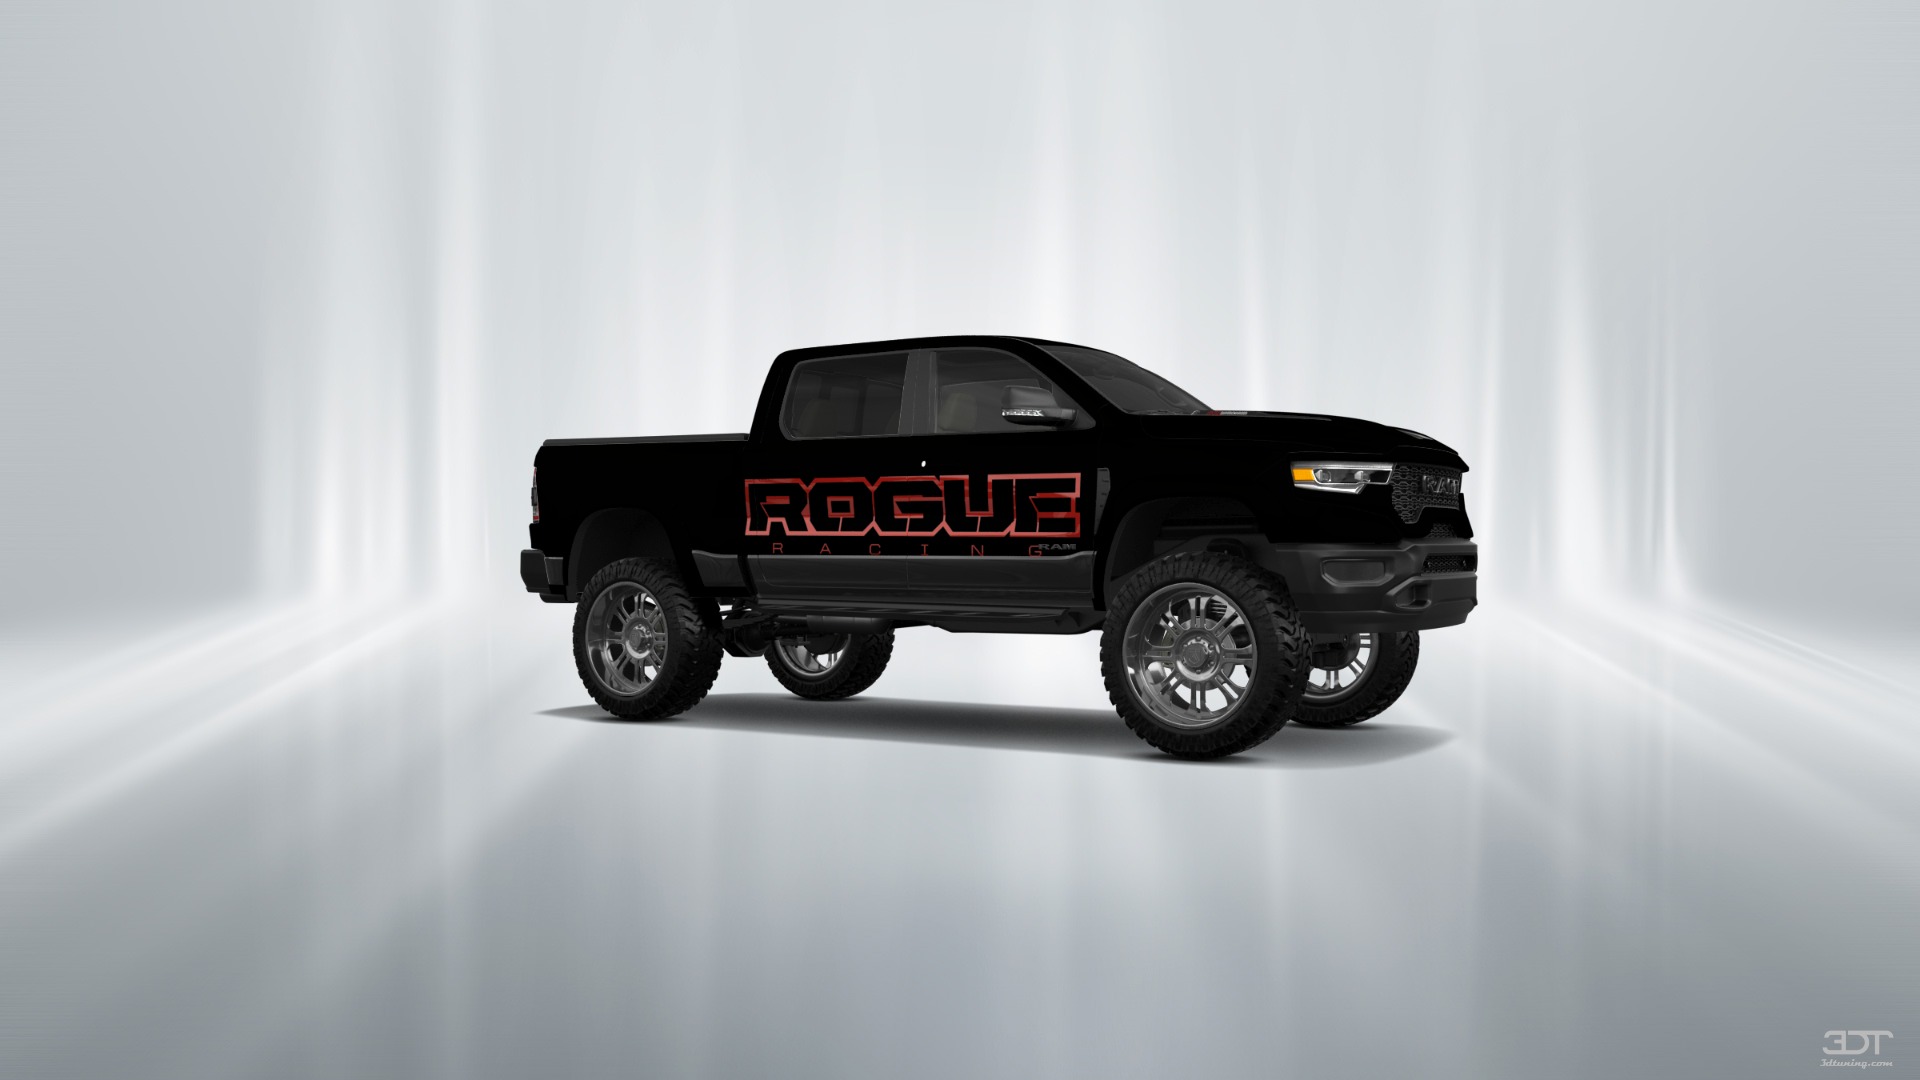 Dodge Ram 1500 TRX 4 Door pickup truck 2021